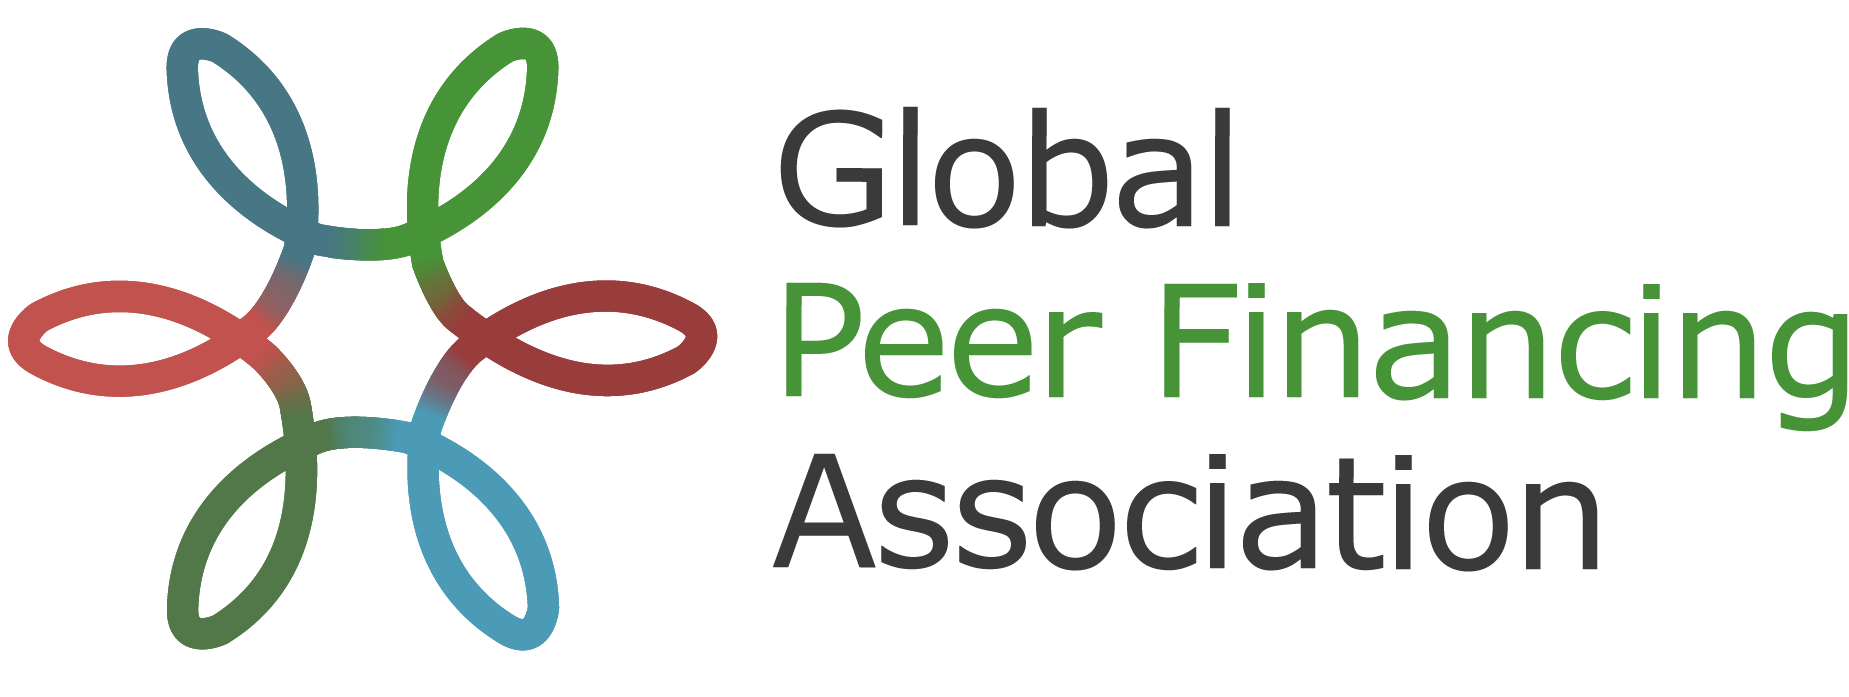 Global Peer Financing Association